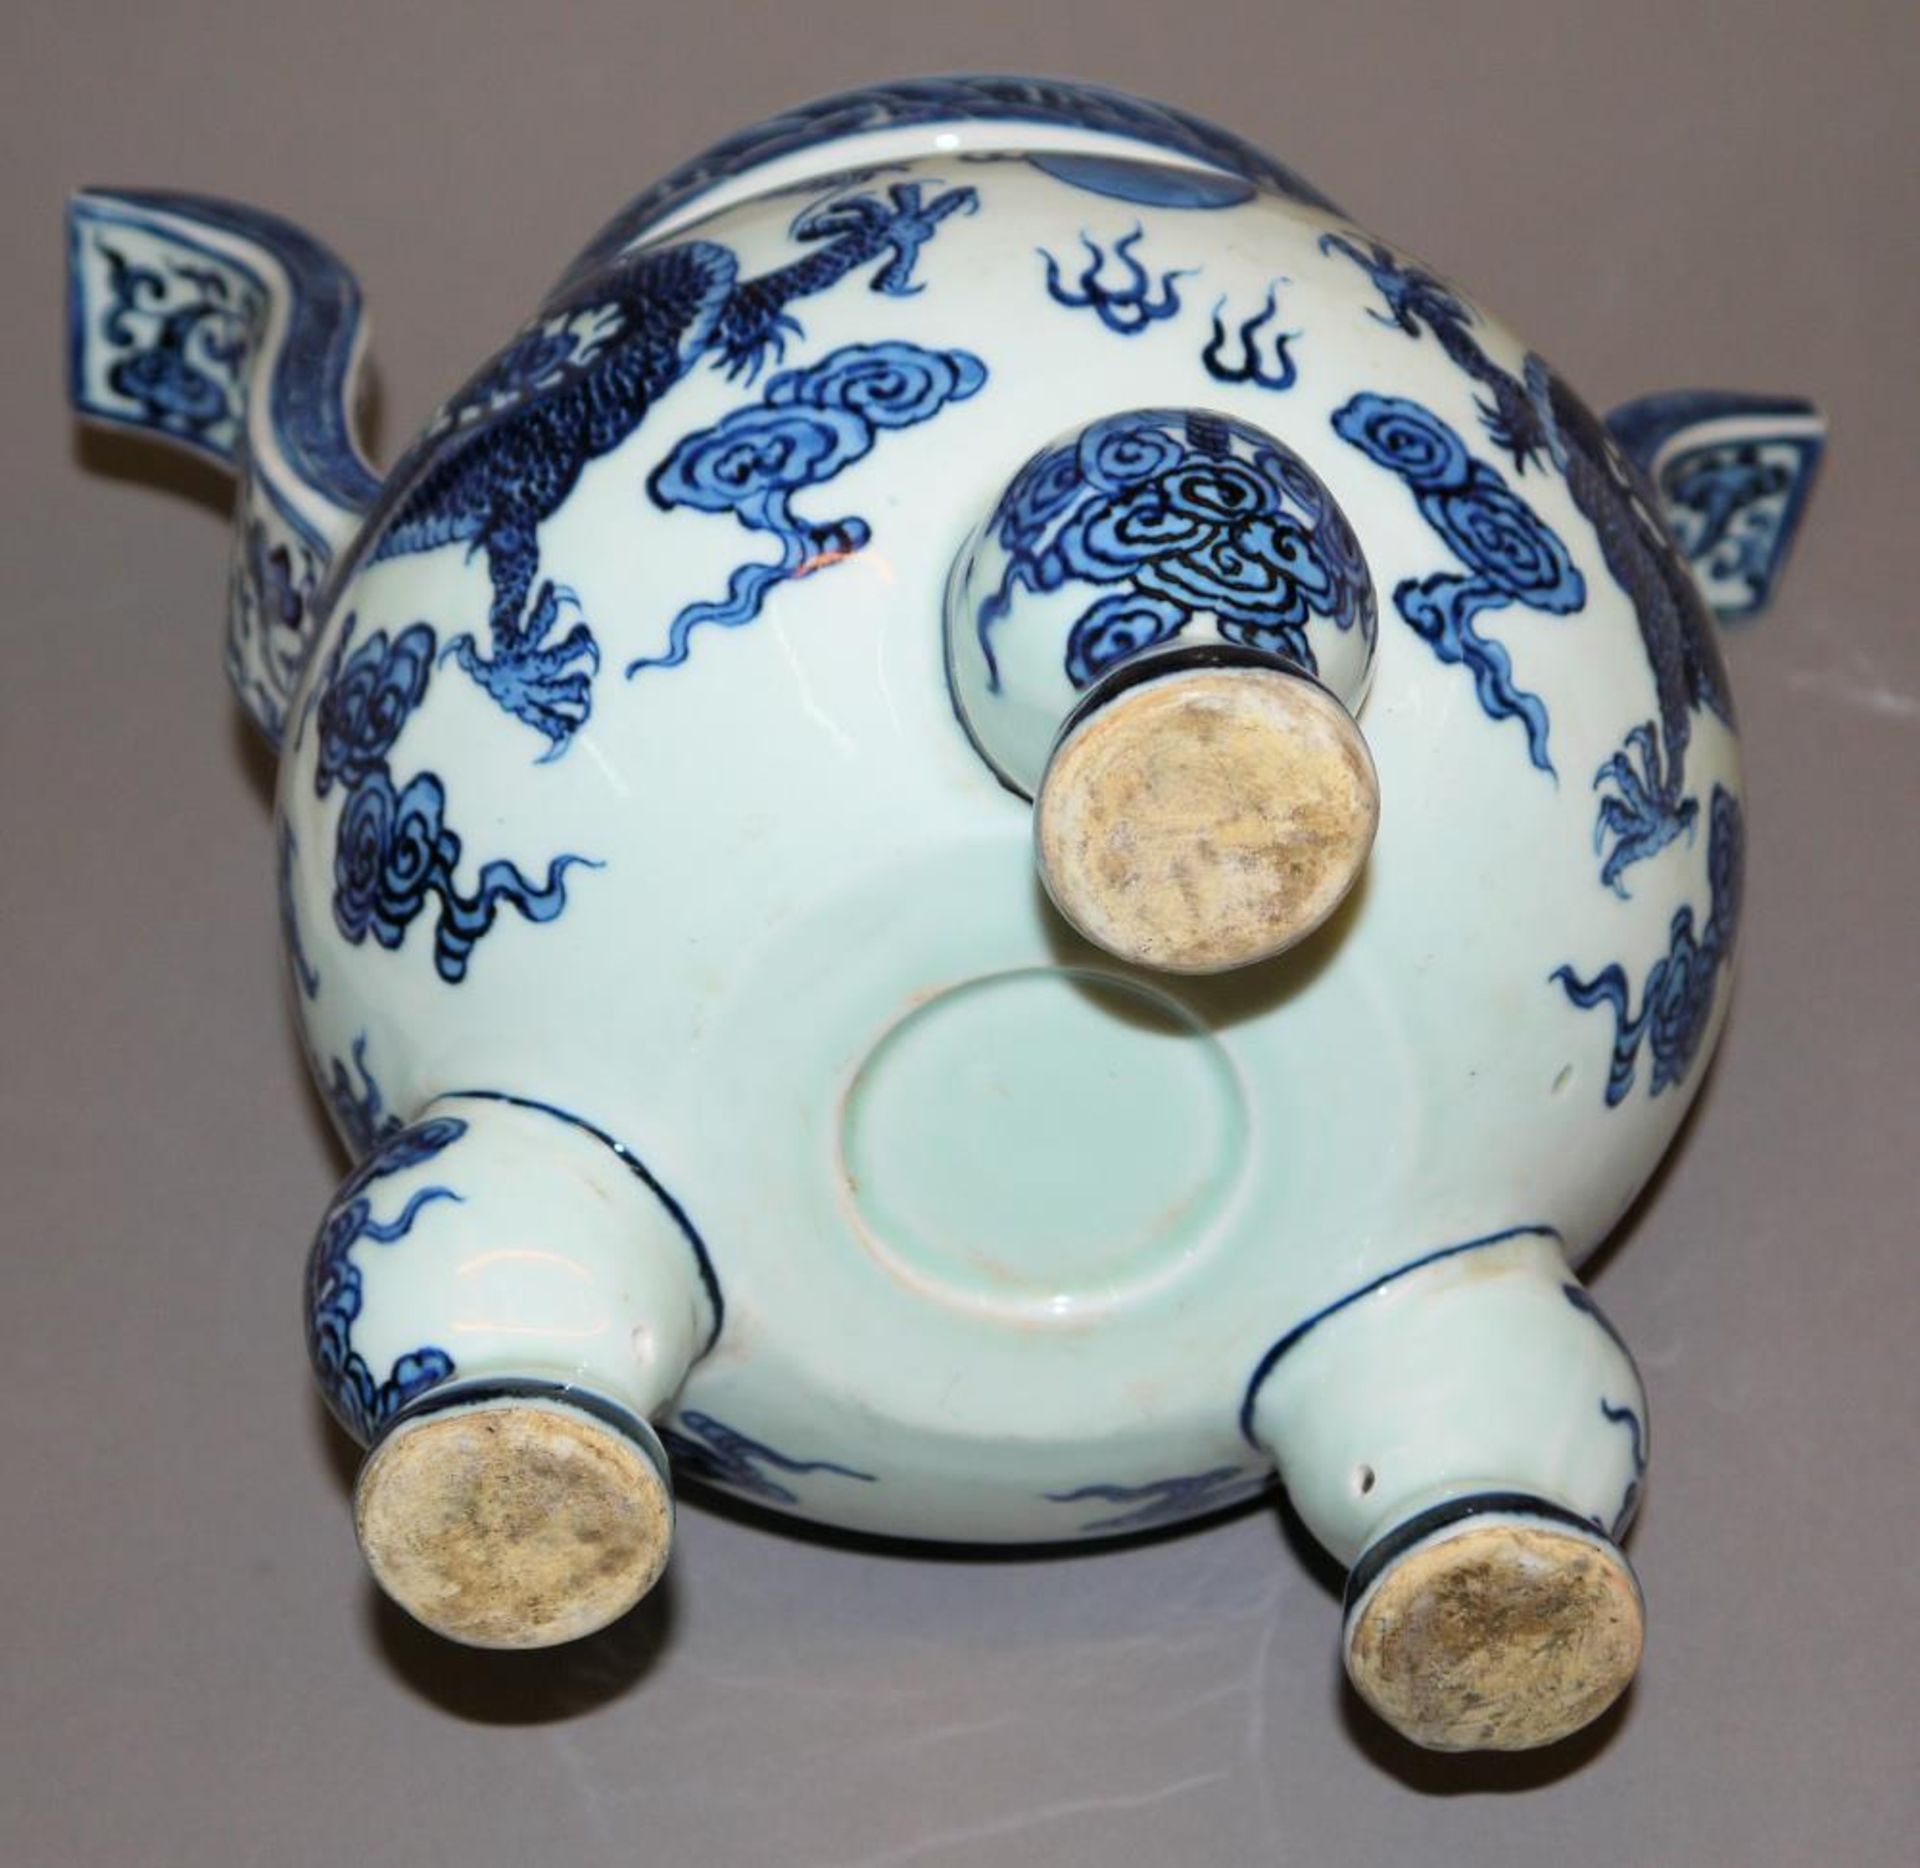 Großer Blauweiß-Dreifußbrenner, China 20. Jh. Räuchergefäß auf Porzellan, der bauchige Korpus auf - Bild 3 aus 3